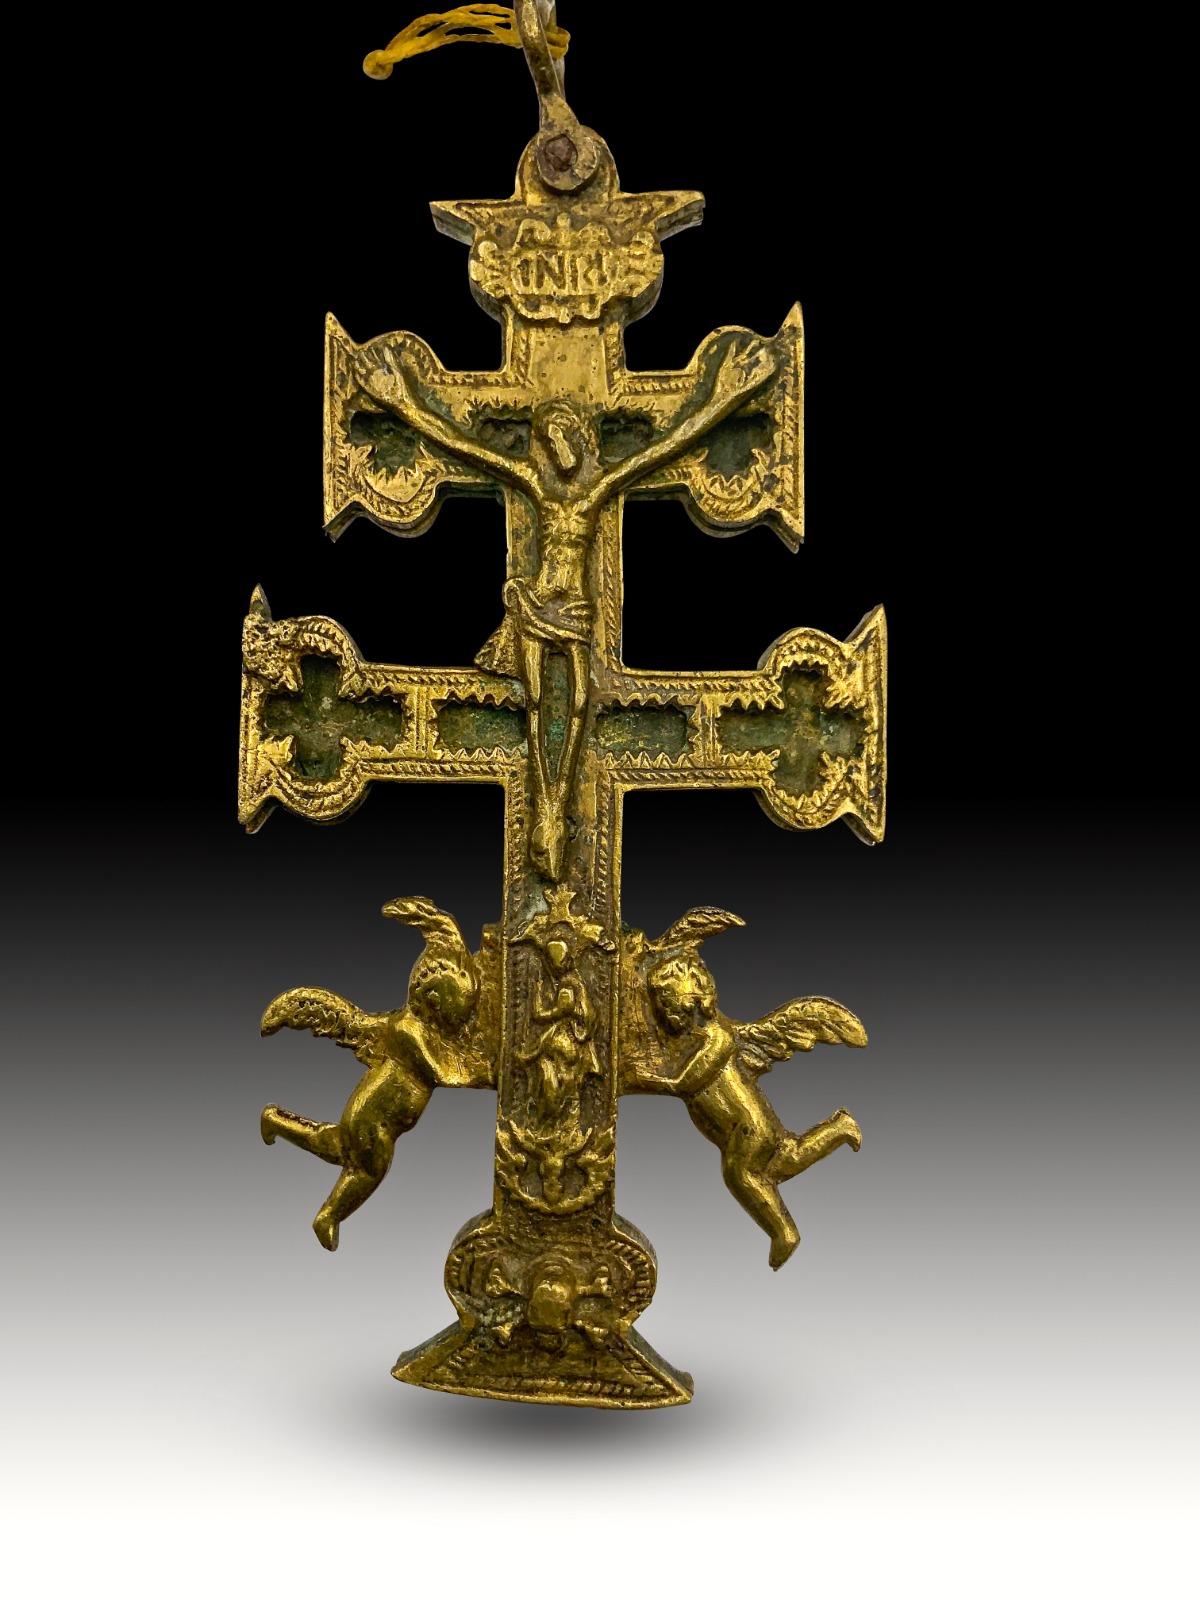 Kreuz von caravaca XVII Jahrhundert.
Sehr schönes Kreuz von Caravaca aus Bronze. 17. Jahrhundert. Abmessungen: 15x6 cm.
Guter Zustand.